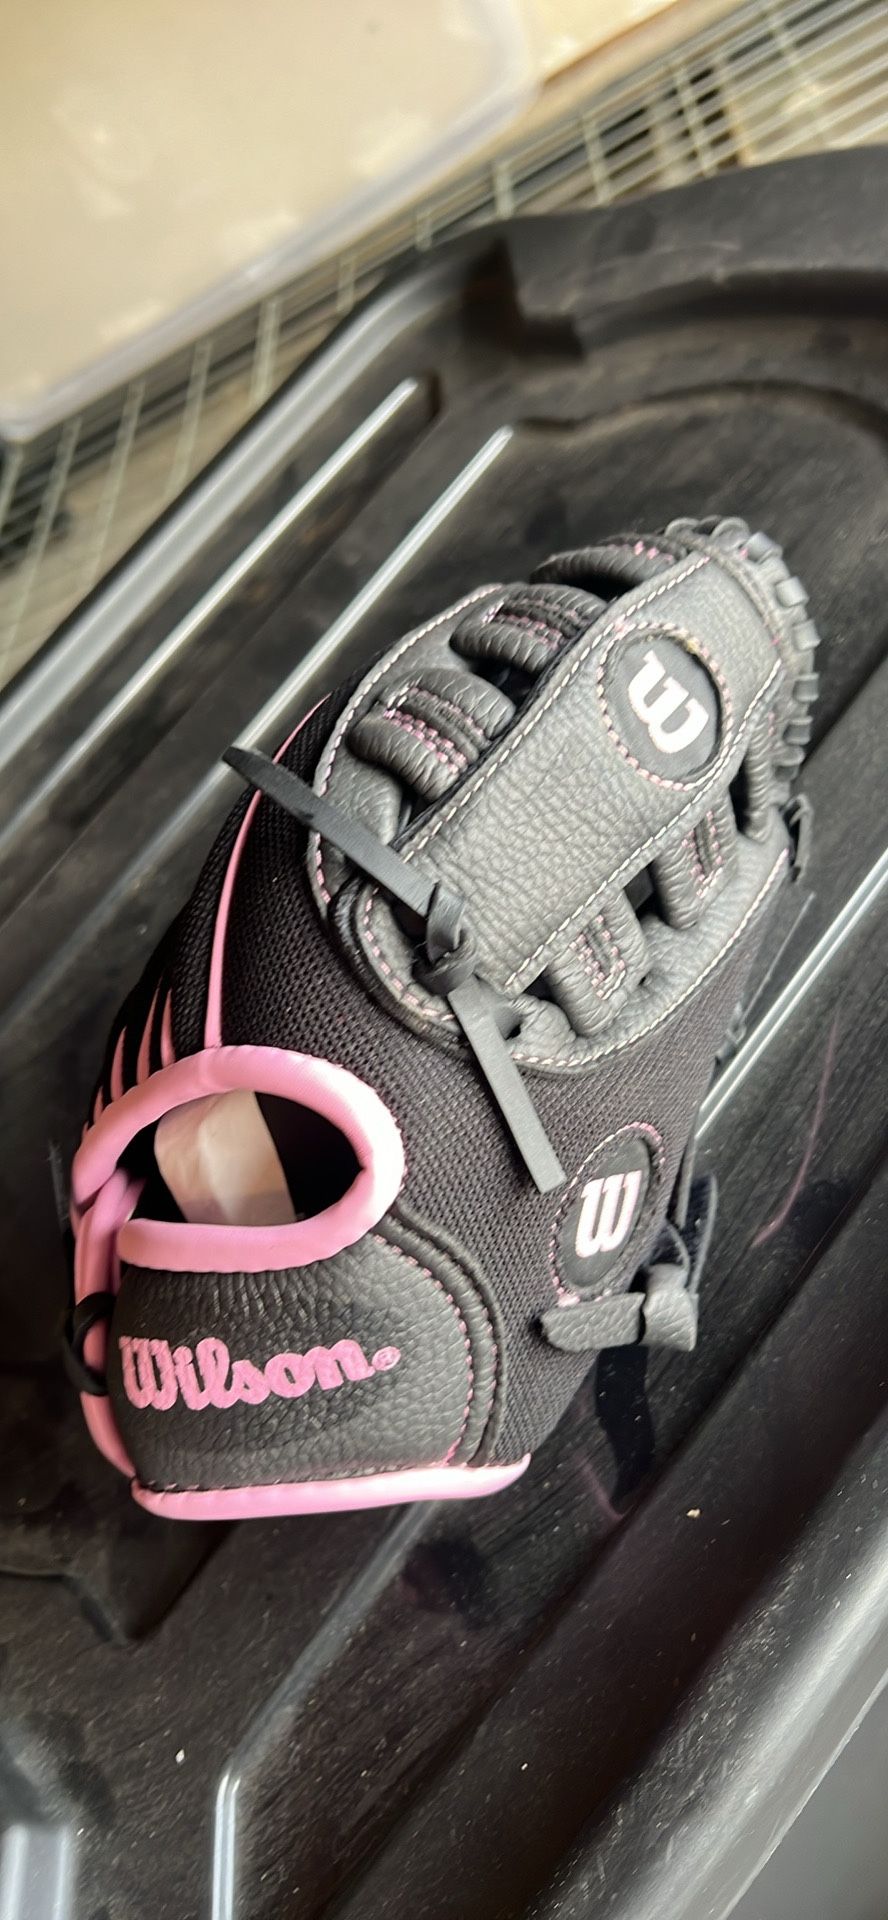 Wilson Girls Tball Glove